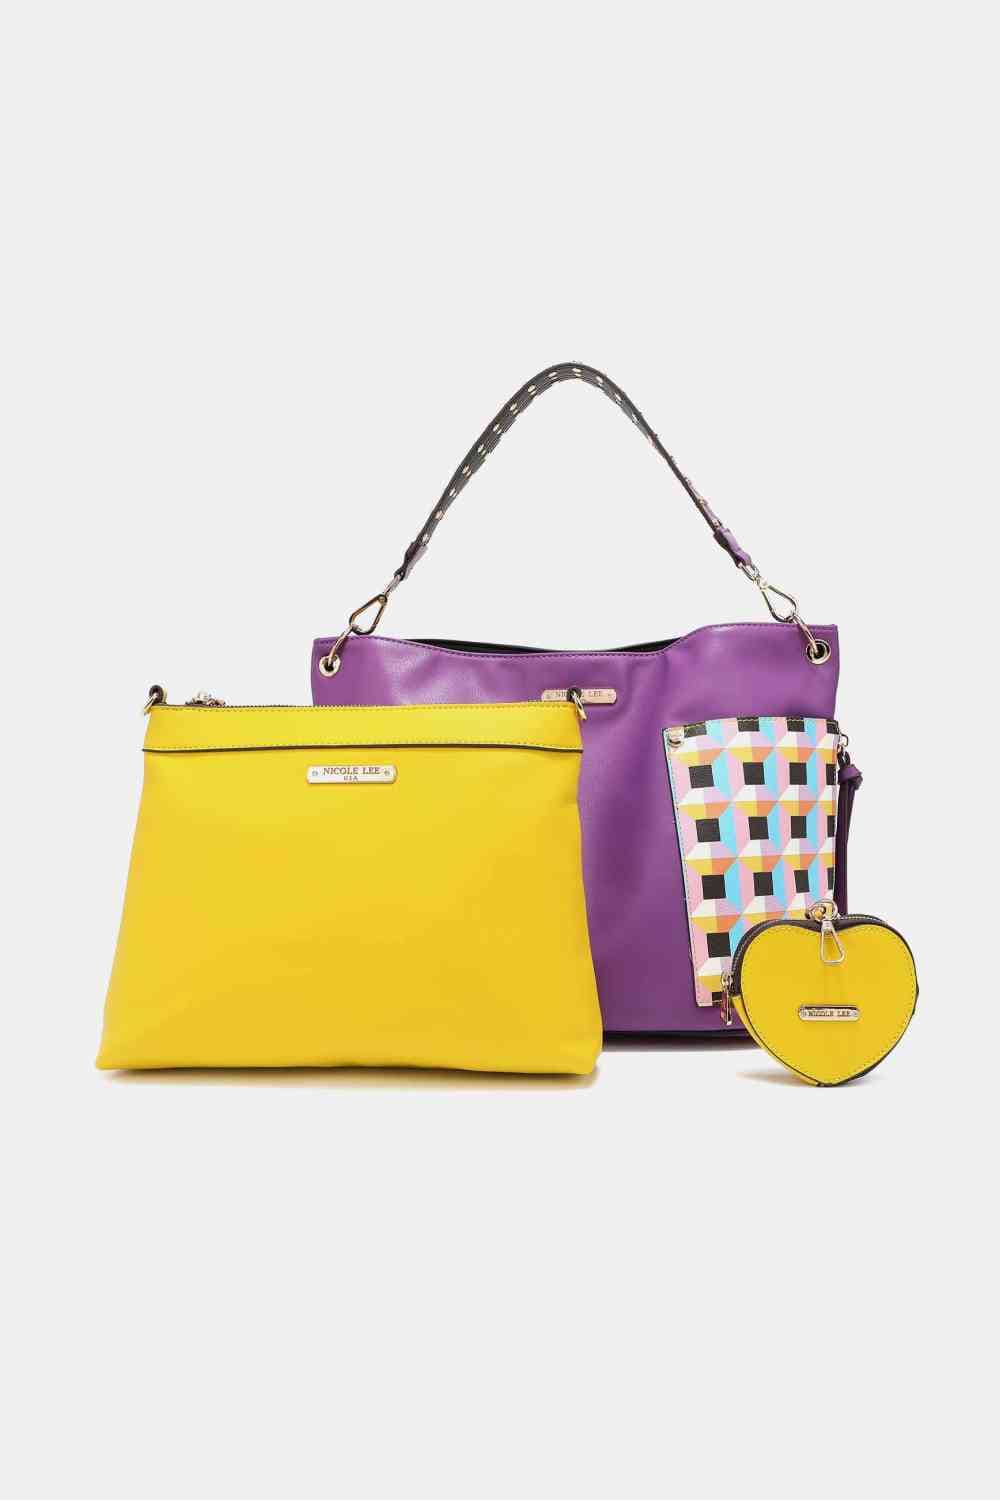 The802Gypsy Handbags, Wallets & Cases GYPSY-Nicole Lee USA-3-Piece Handbag Set